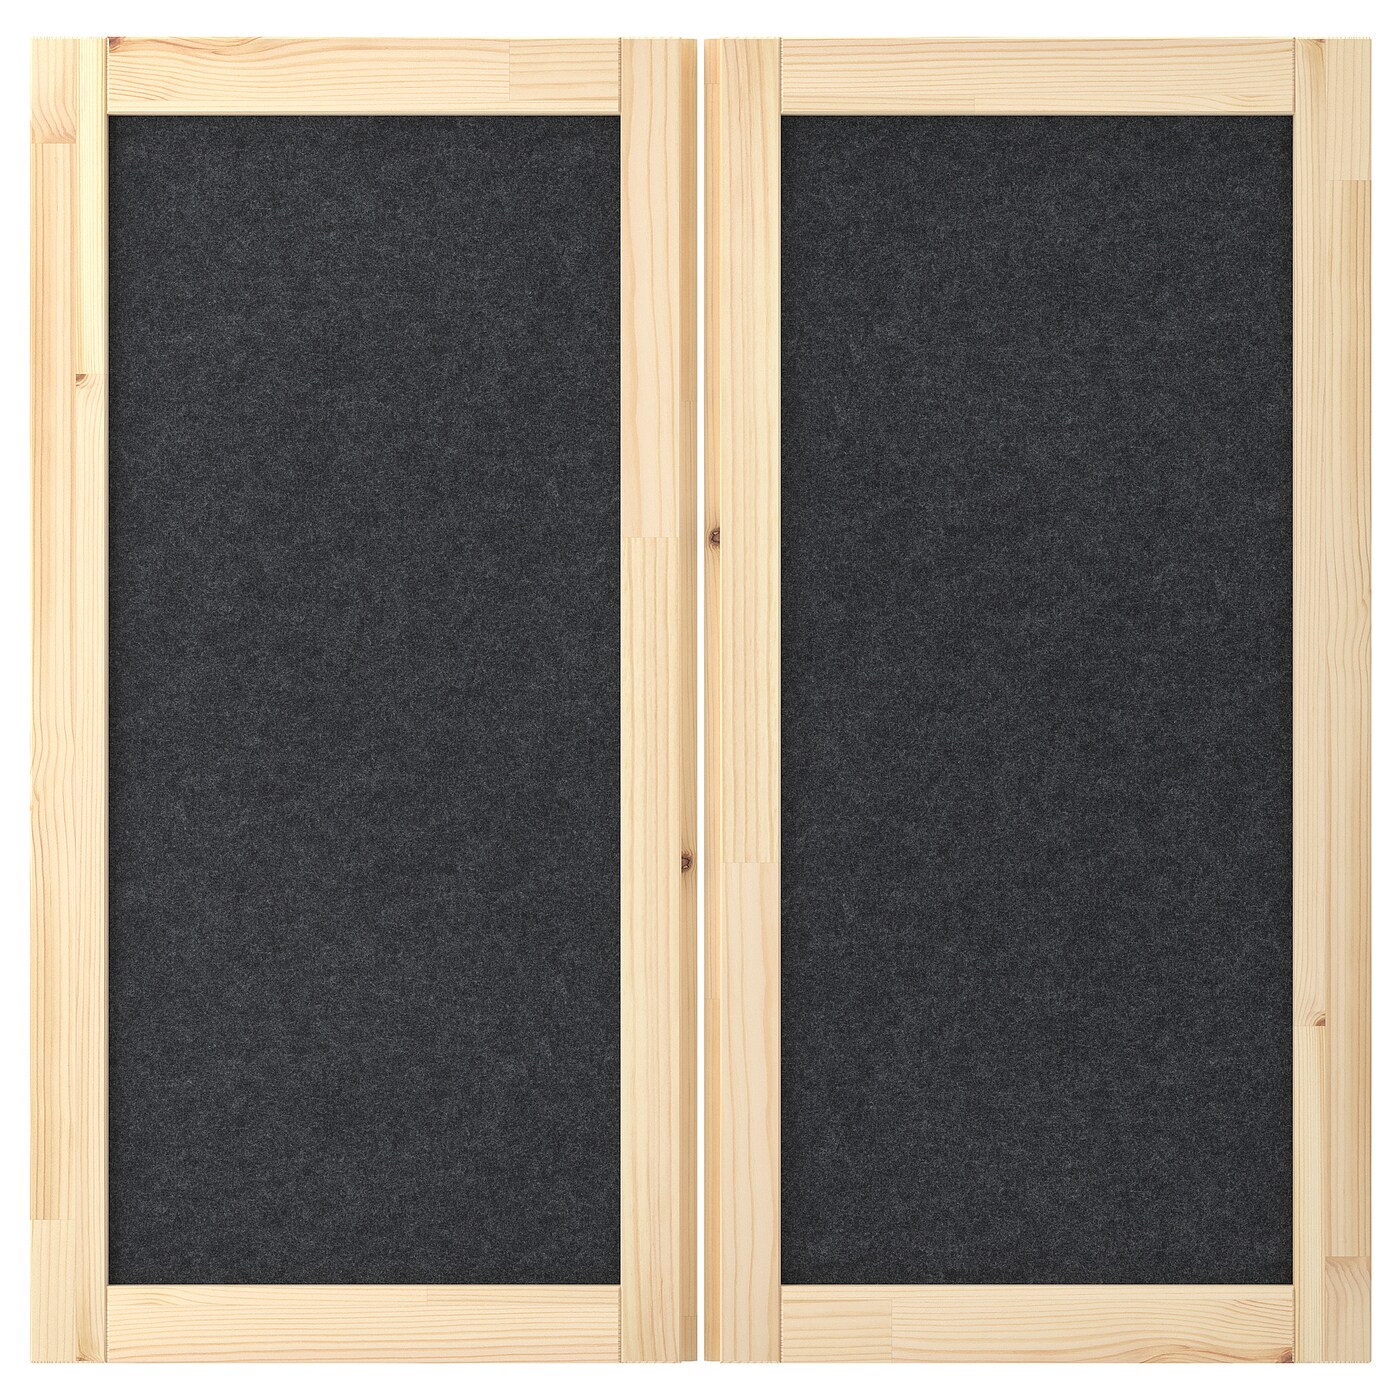 Дверь -  IVAR IKEA/ ИВАР ИКЕА, 83х42 см, бежевый/черный